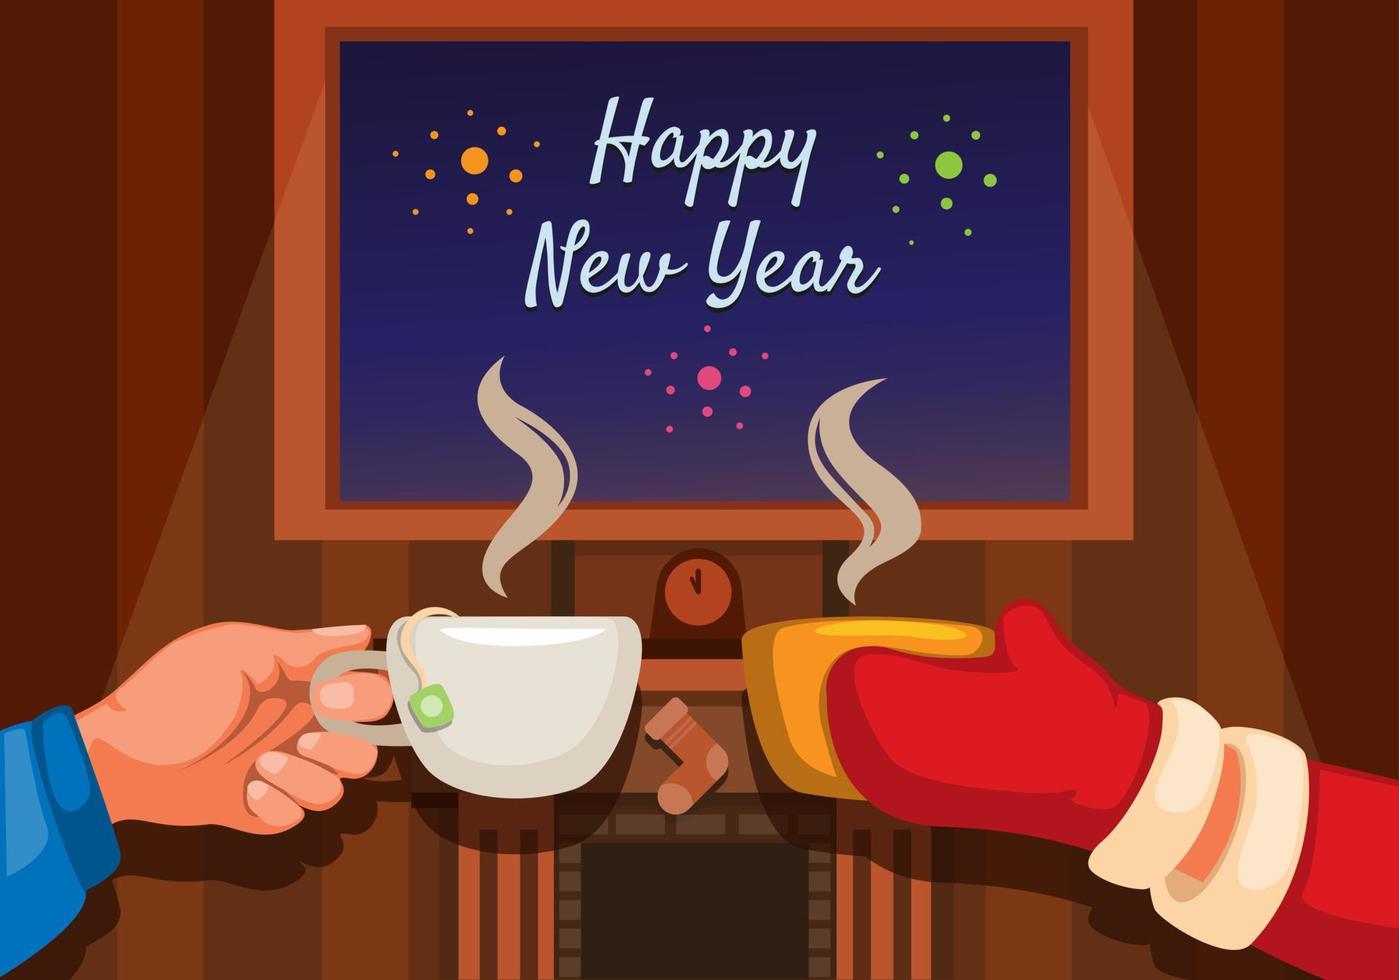 Feliz ano novo, comemoração de saudação com bebida café e chá ilustração dos desenhos animados vecto vetor